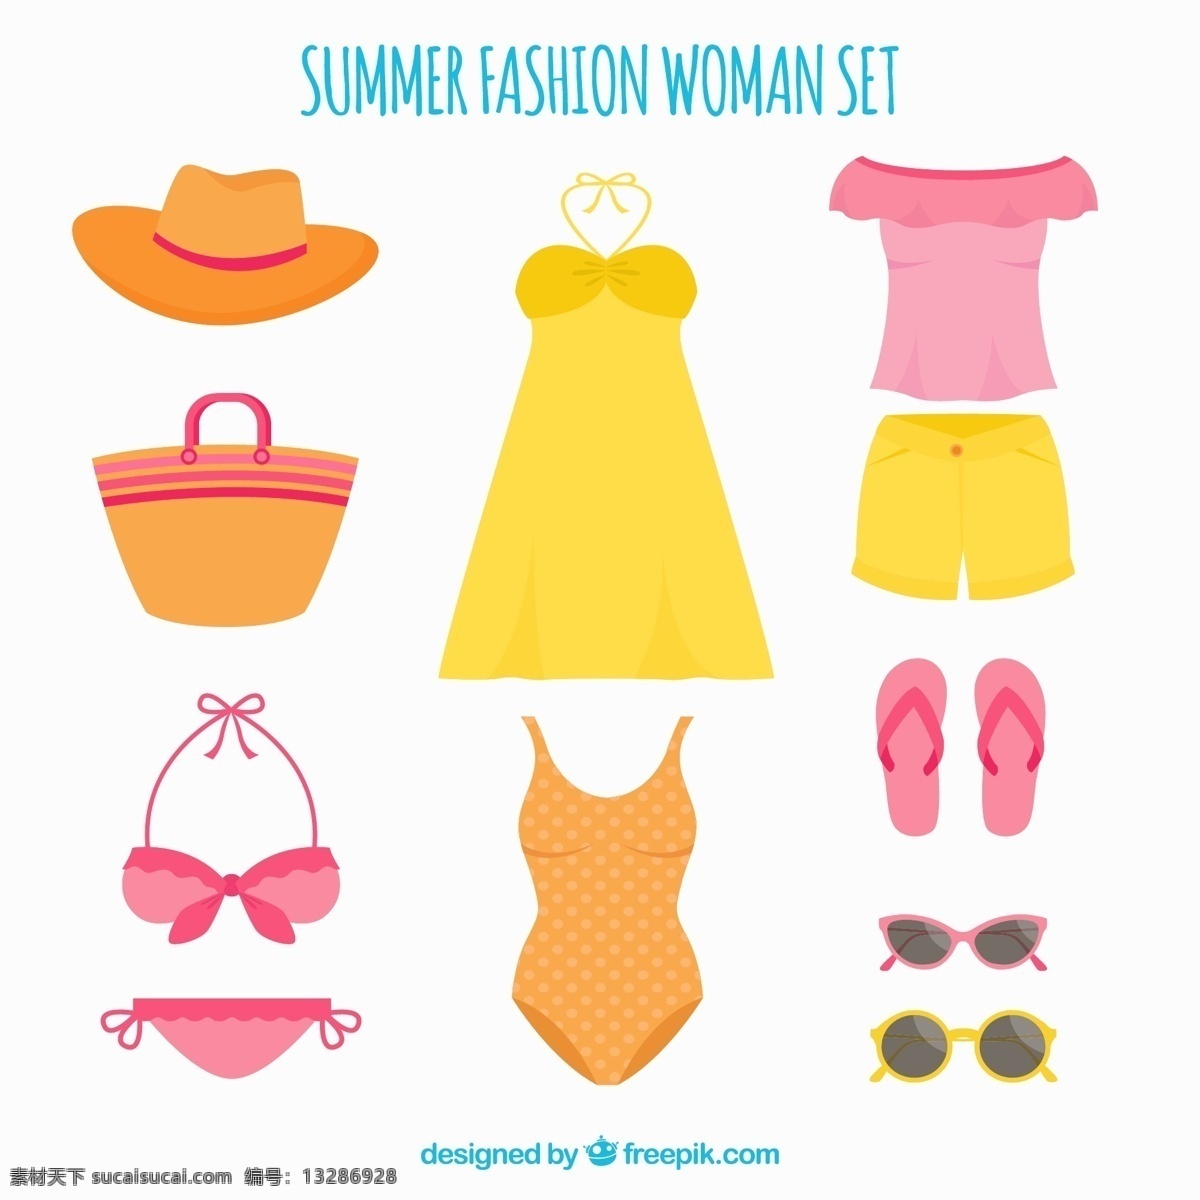 妇女 夏季 服装 套 夏天 一方面 时尚 手绘 包 衣服 帽子 t恤 太阳镜 织物 纺织品 比基尼 得出 季节 集时尚 泳衣 翻转